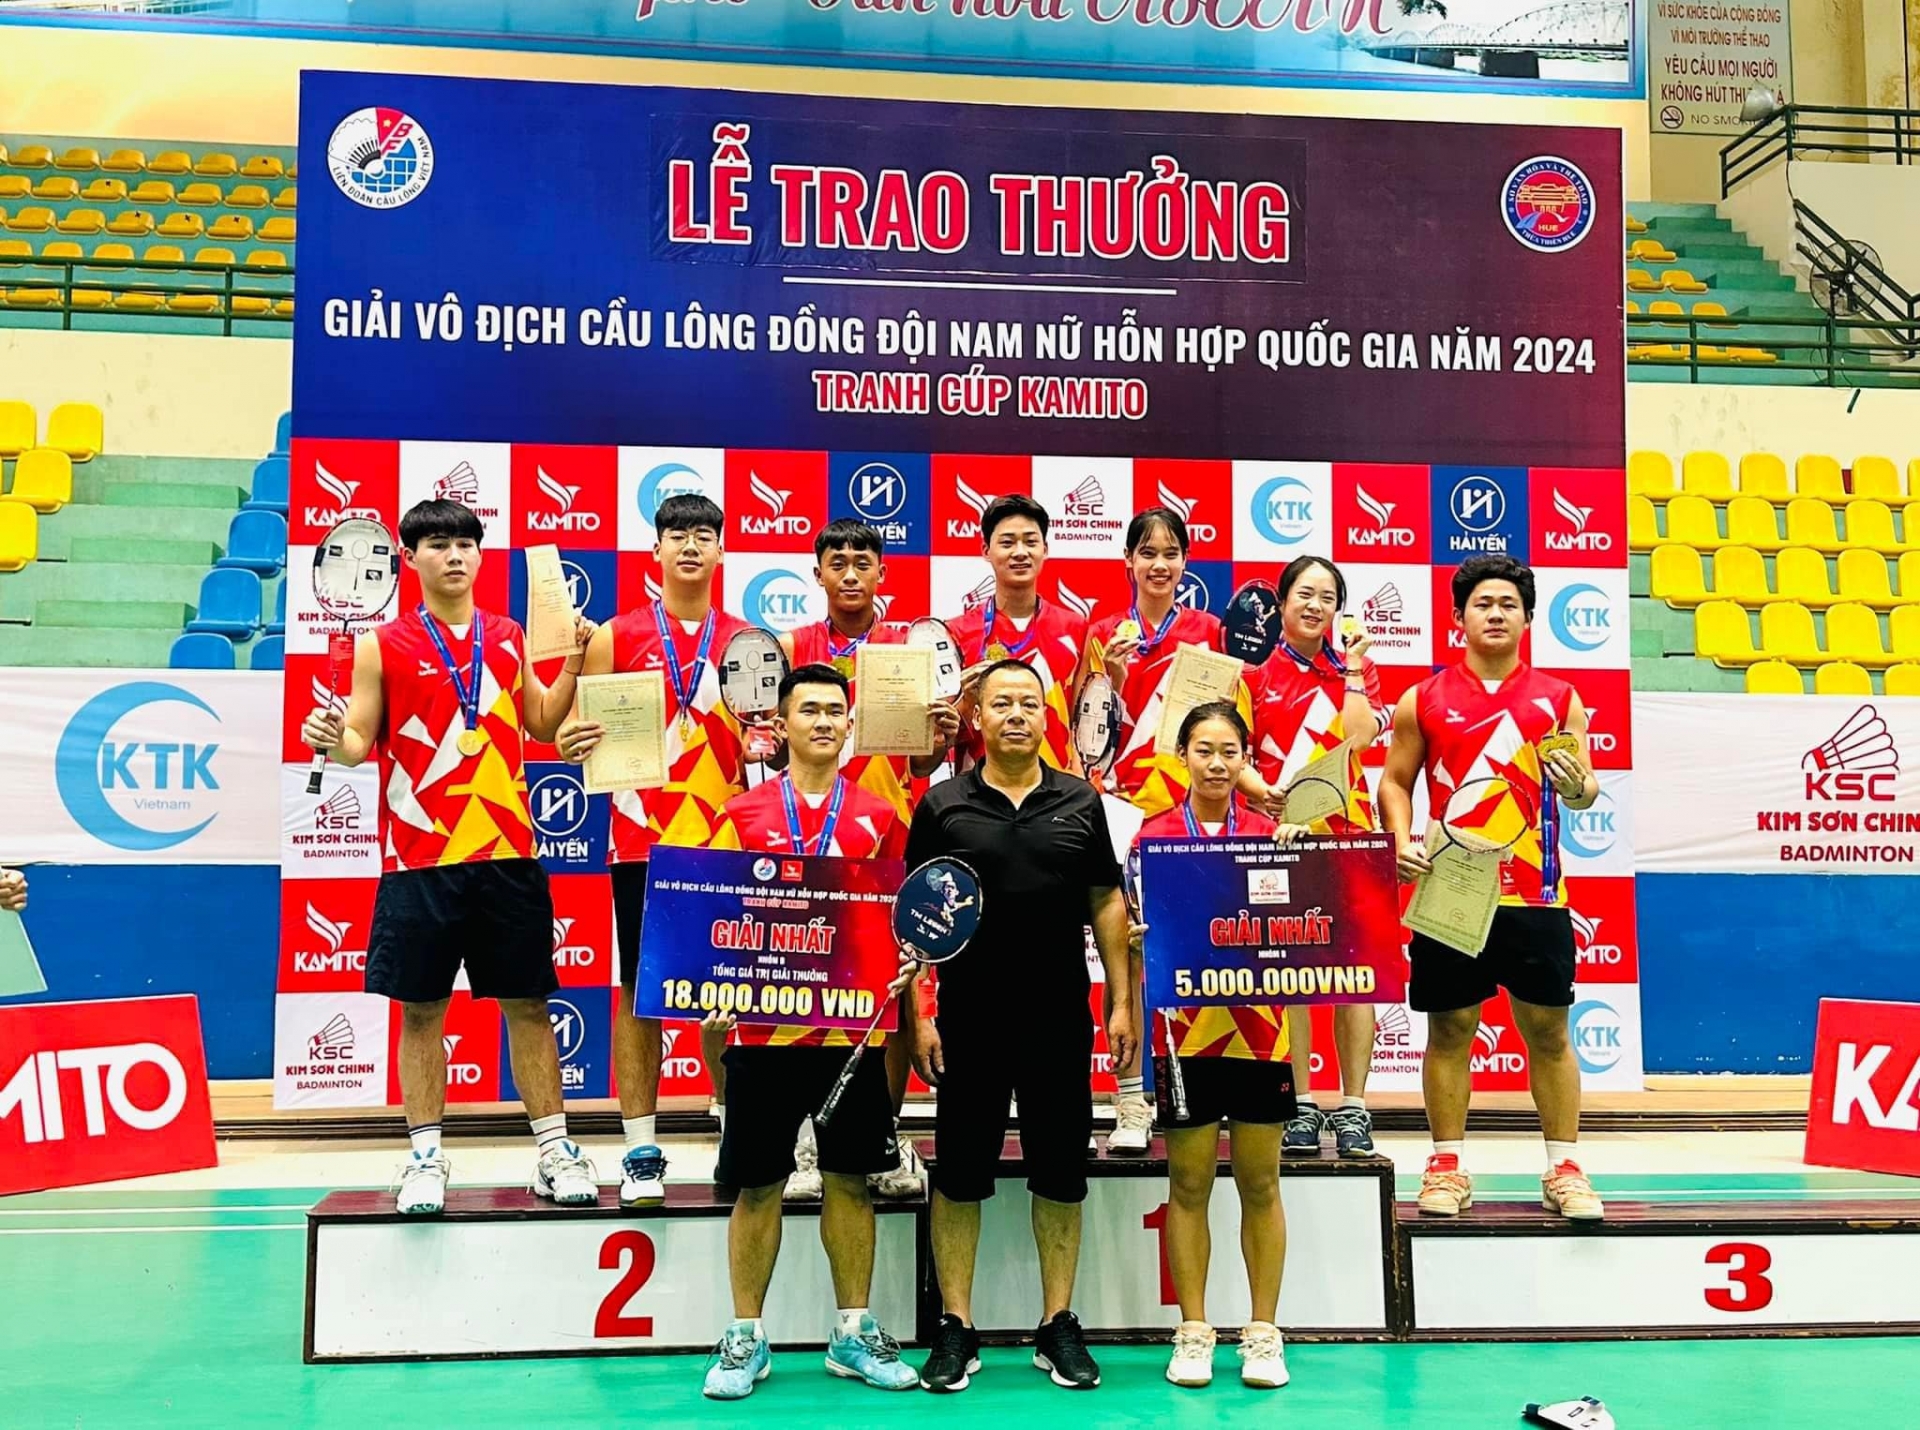 Đội tuyển Cầu lông Lâm Đồng đã giành HCV ở nhóm B, qua đó góp mặt tại cấp độ cao nhất mùa giải năm sau. 